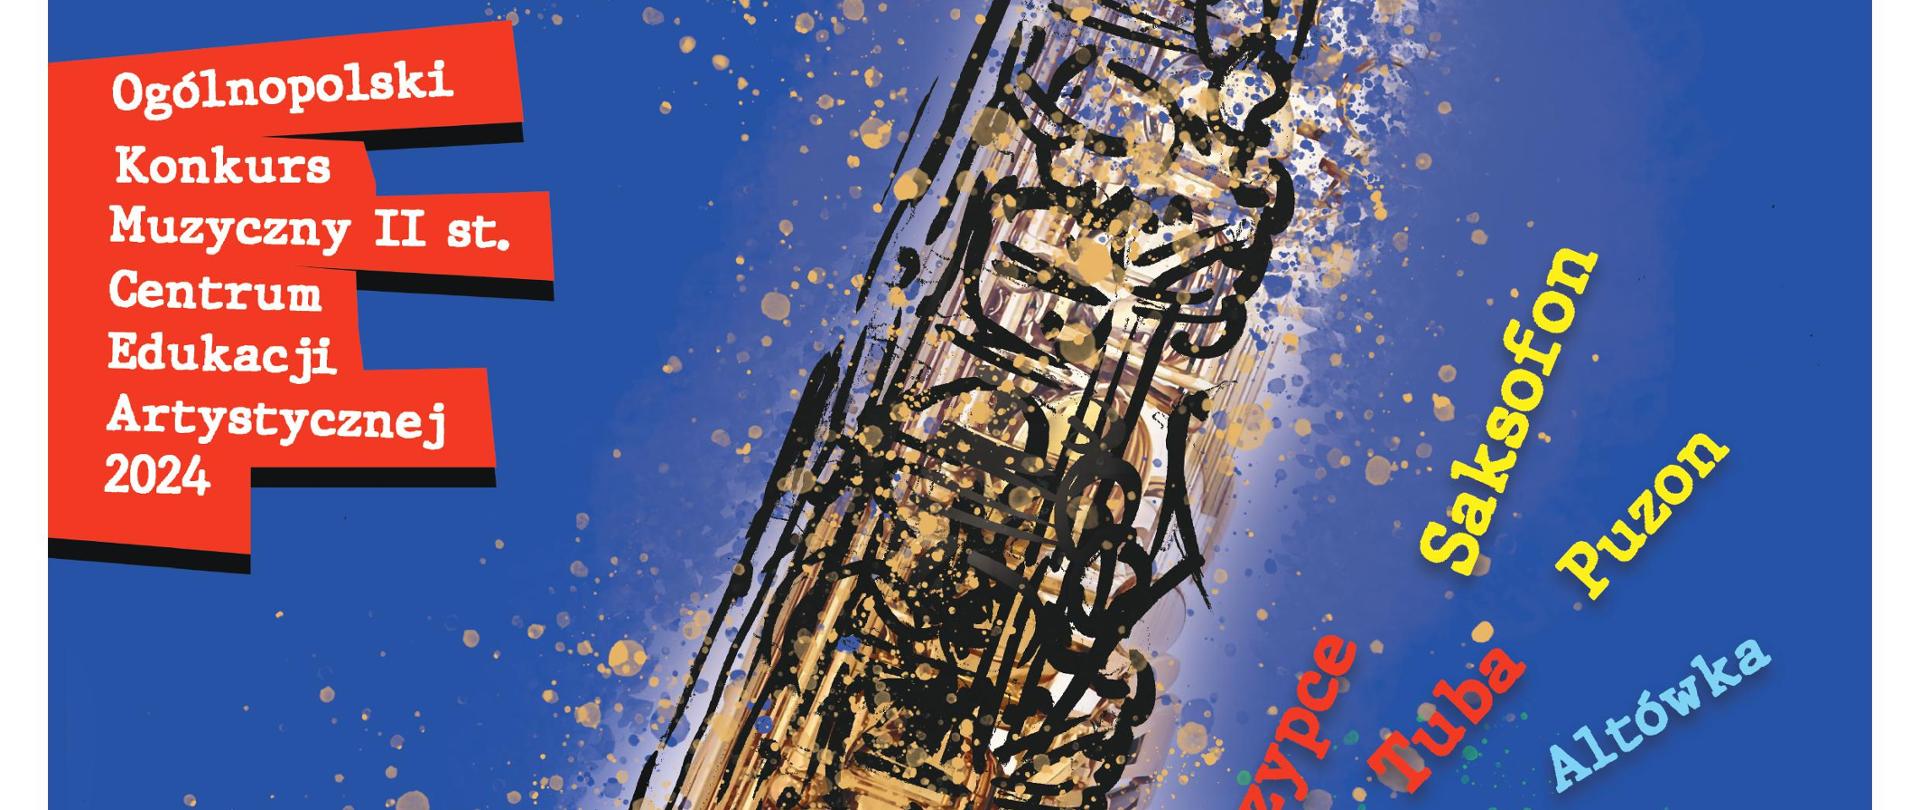 plakat w niebieskiej tonacji zawierający grafikę saksofonu z nazwami instrumentów oraz logo CEA i MKiDN